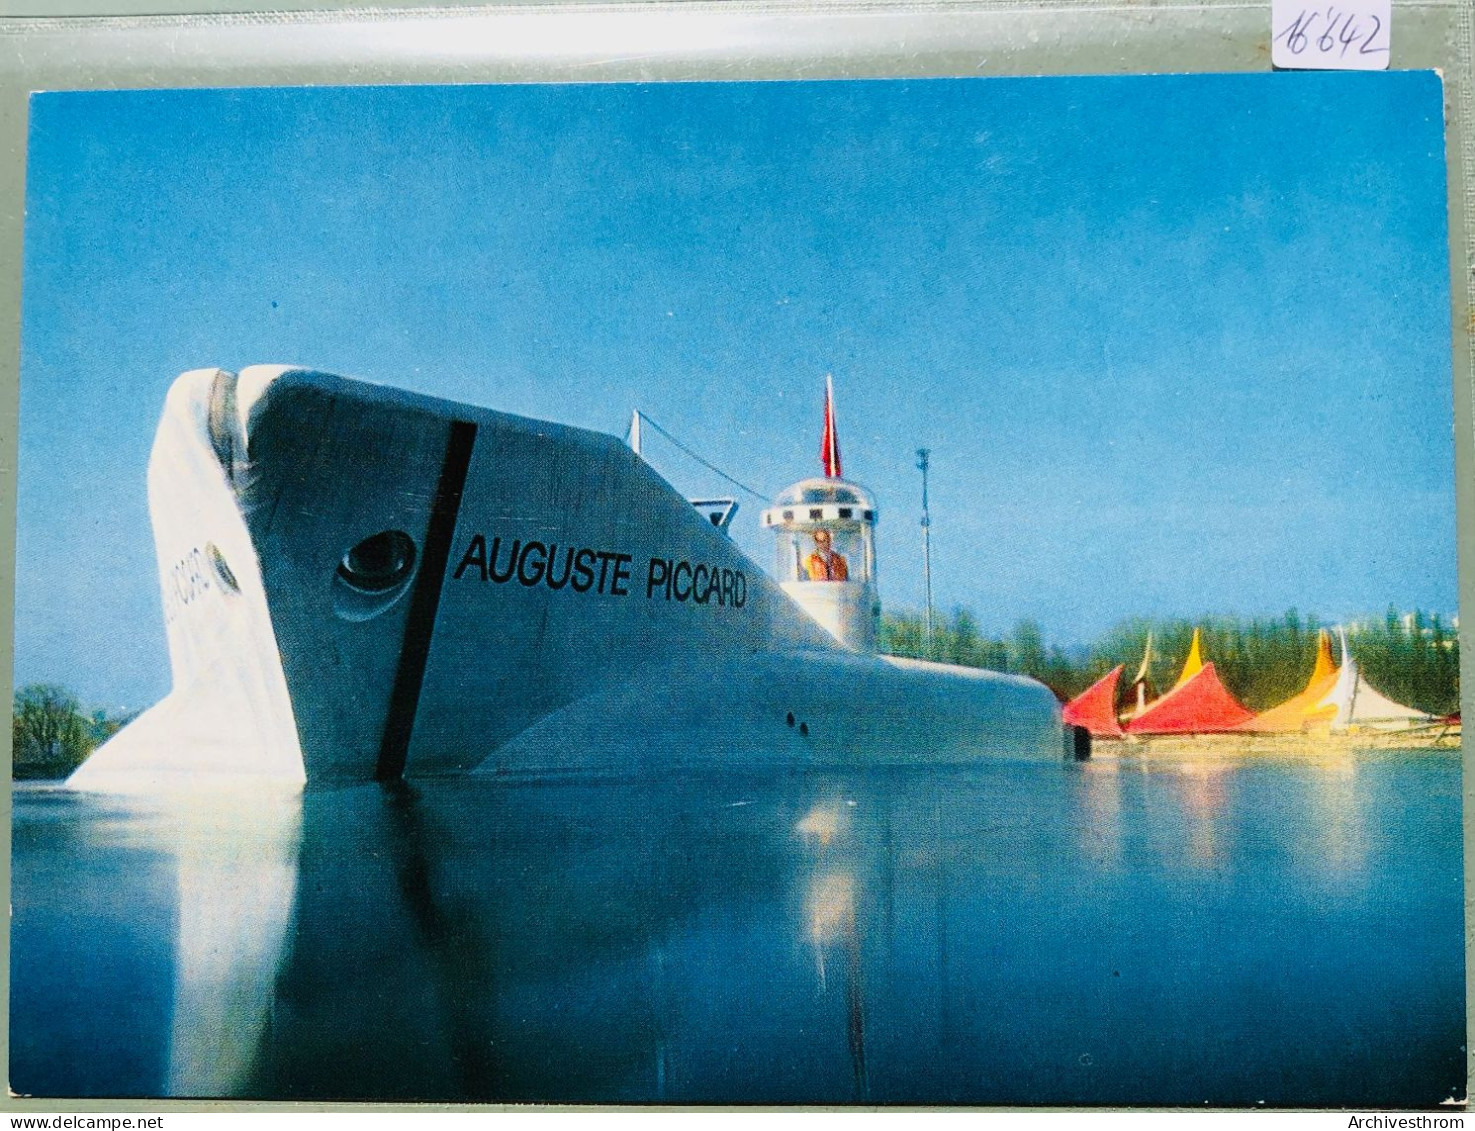 Lausanne : Le Sous-marin Mésoscaphe Auguste-Piccard Avant Plongée En été 1964 Devant Le Port De Vidy (16'642) - Unterseeboote